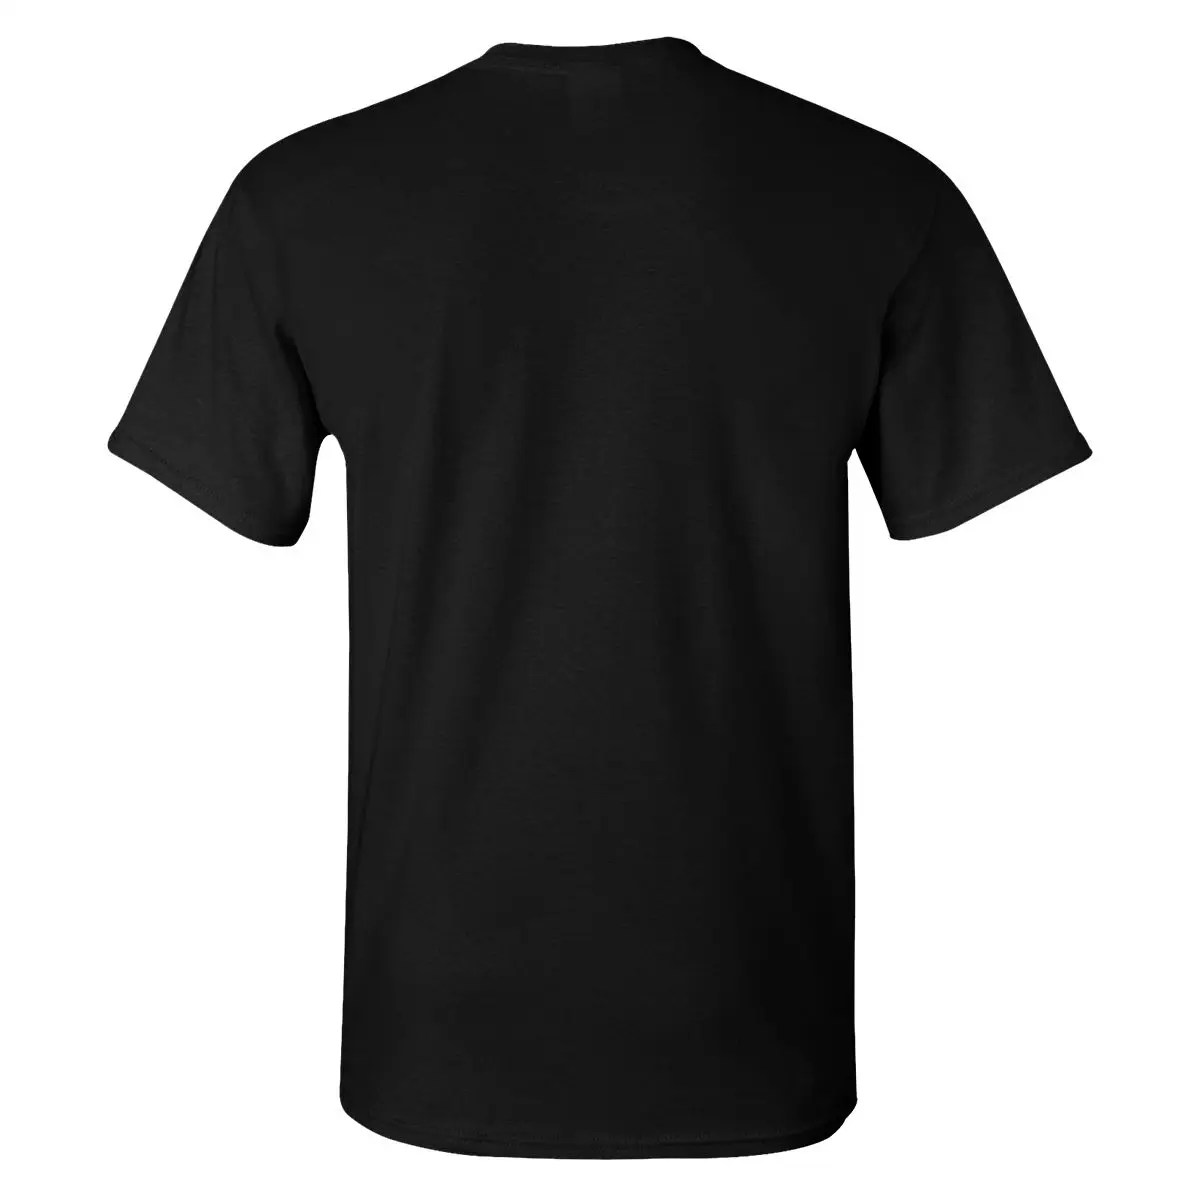 Мужские футболки QUENTIN TARANTINO потрясающая футболка с персонажами из фильма Премиум